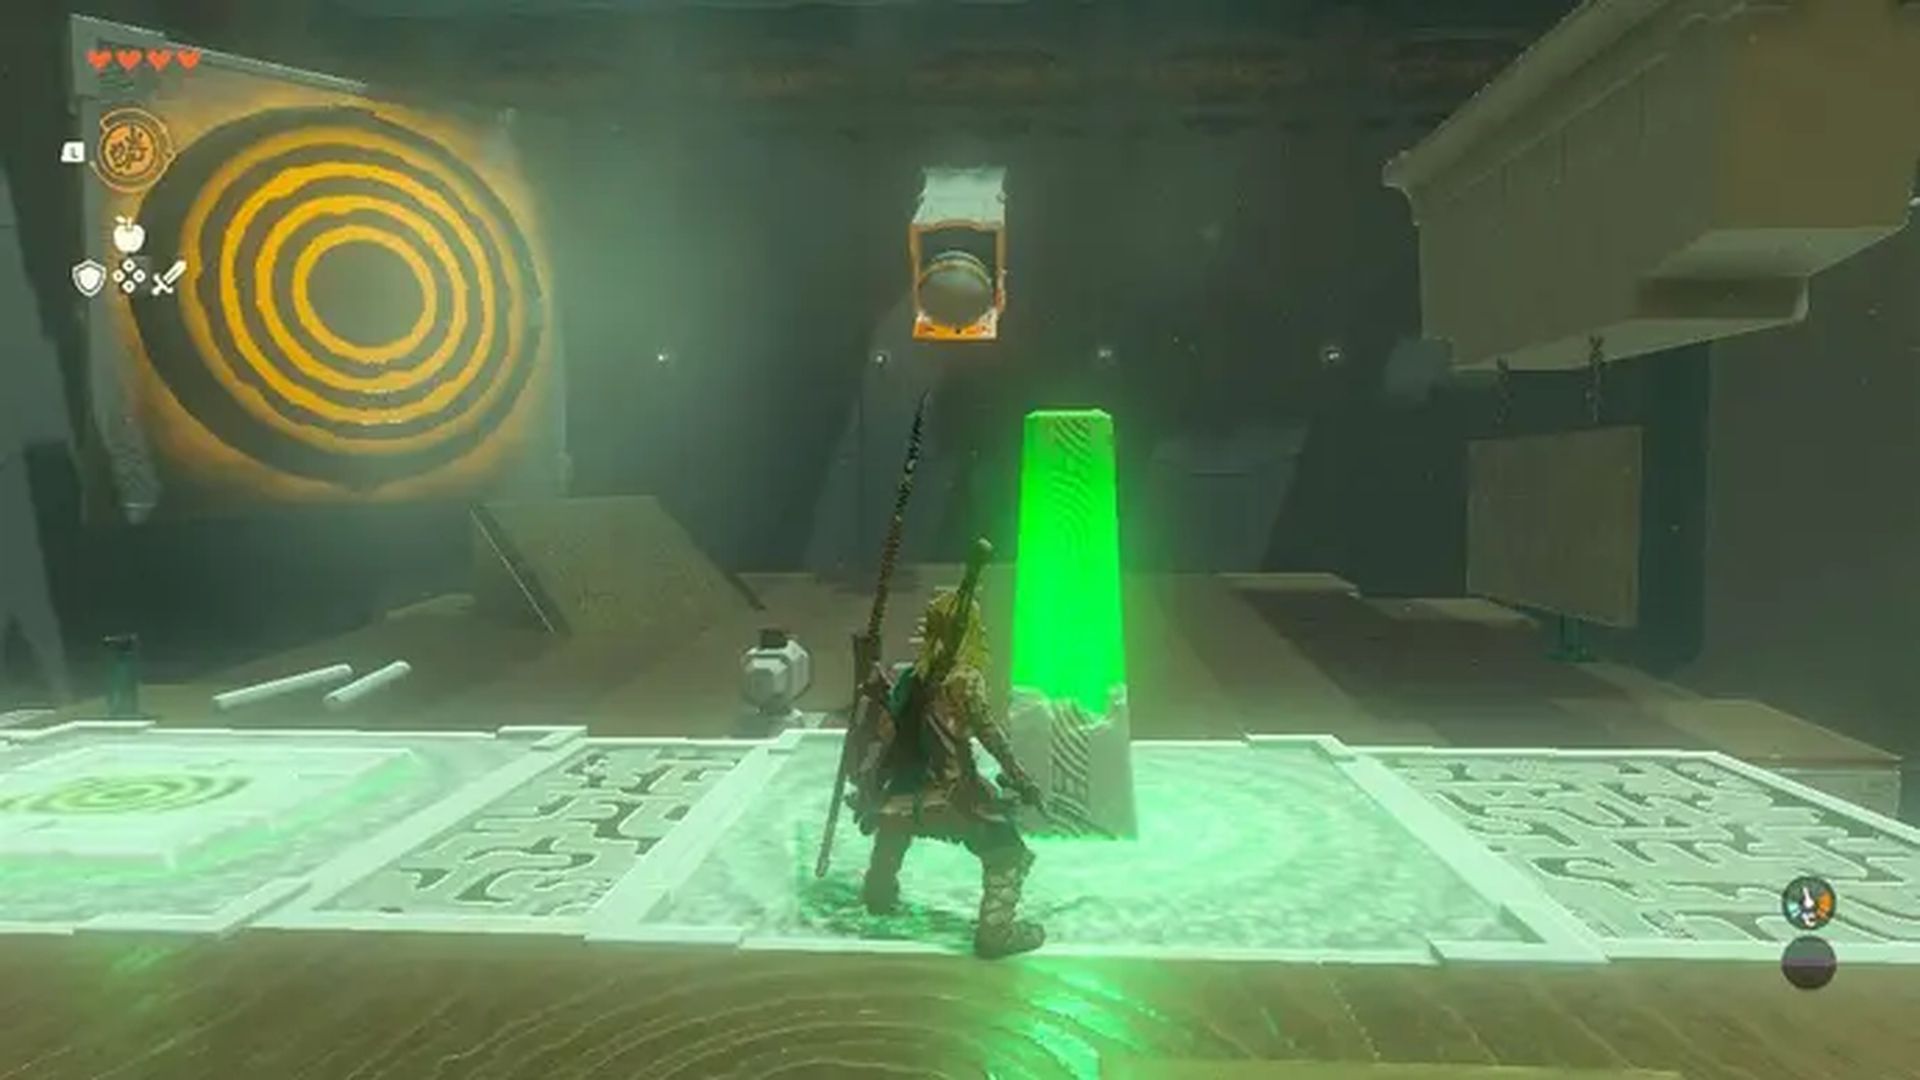 Świątynia Mayachin Zelda